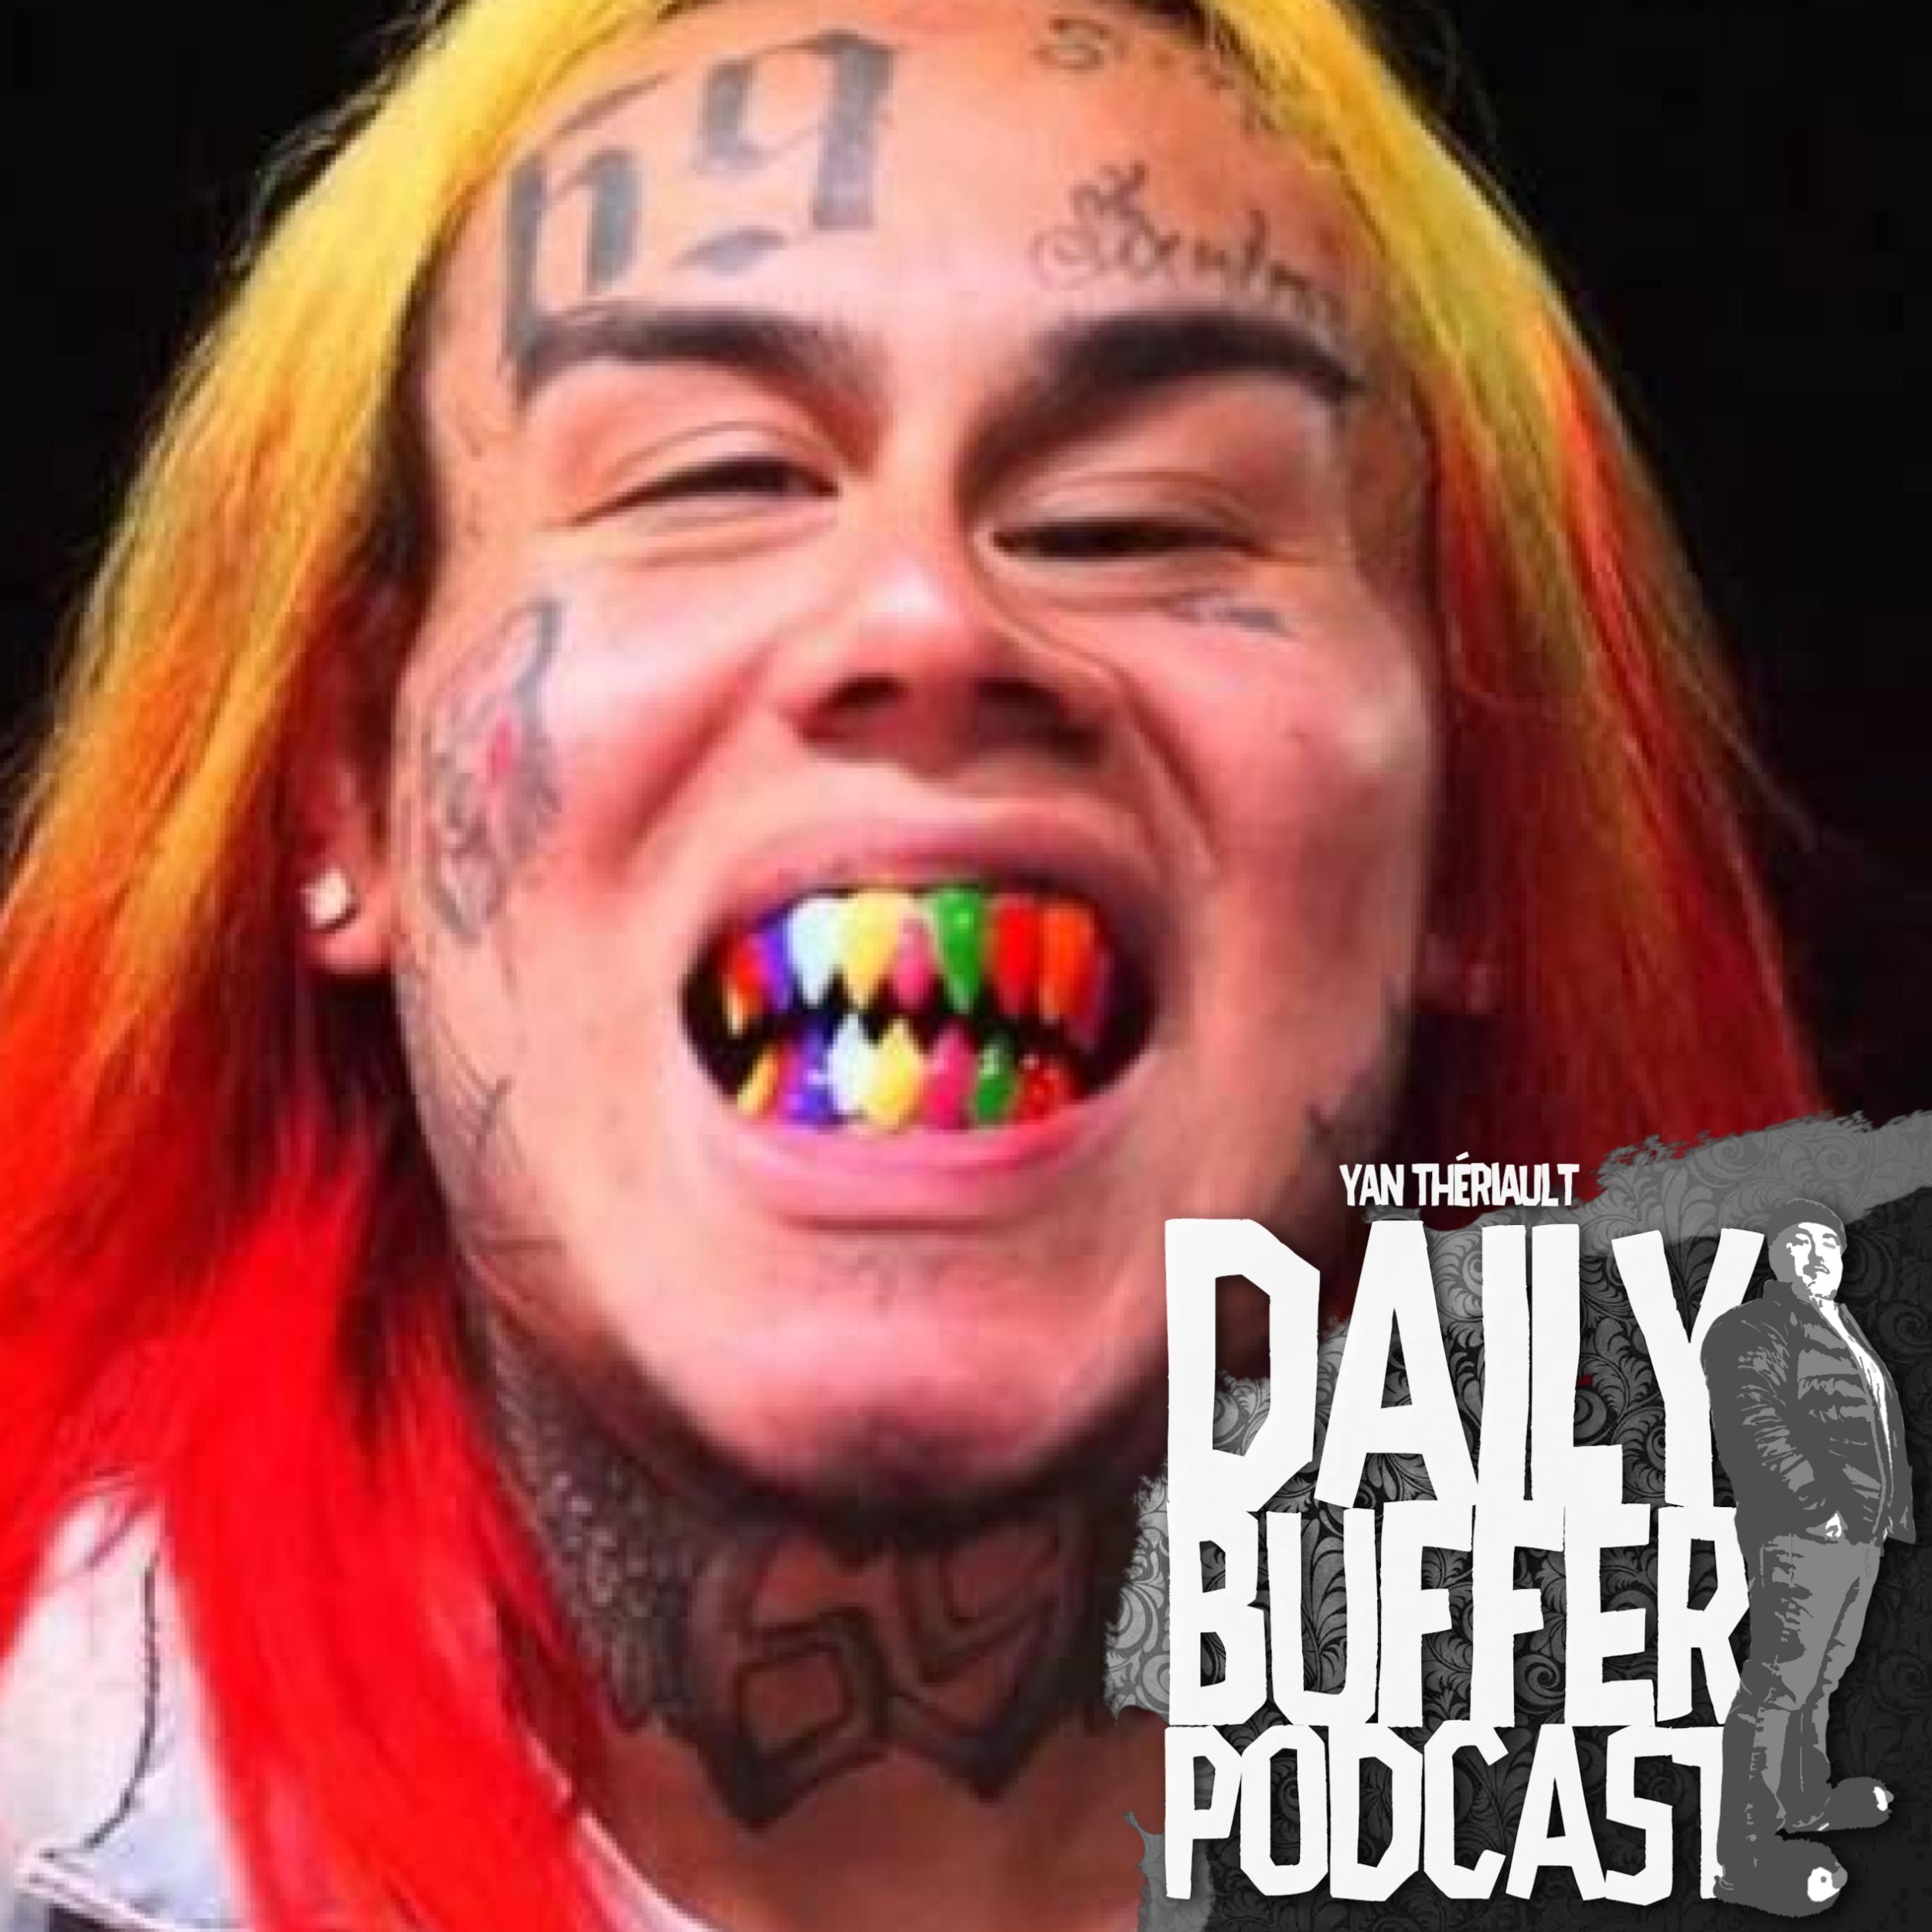 Le rappeur 69 veut changer de visage - Daily Buffer Podcast - 2019 10 02 l